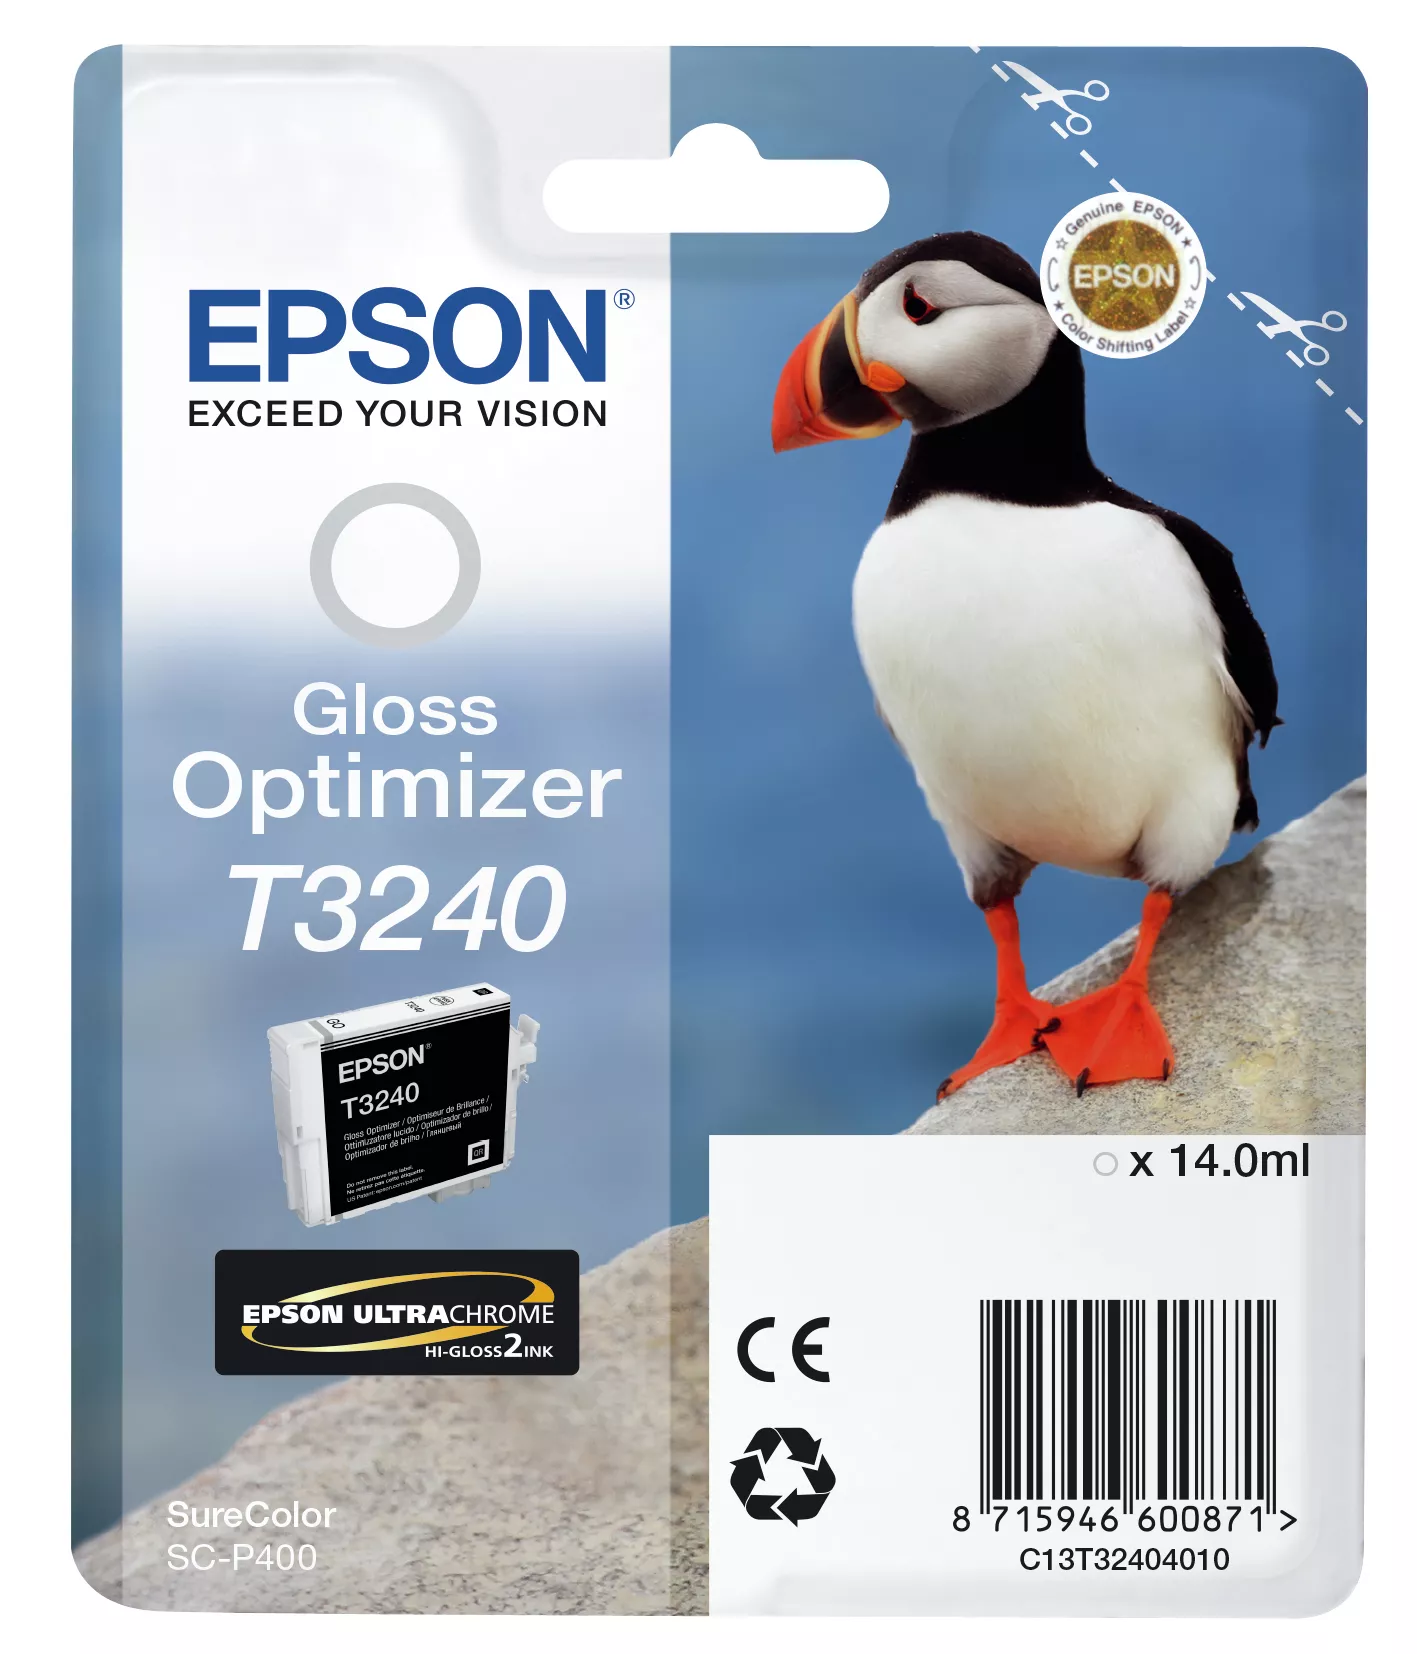 Achat EPSON Cartouche T3240 - optimisateur de brillance 3350 au meilleur prix